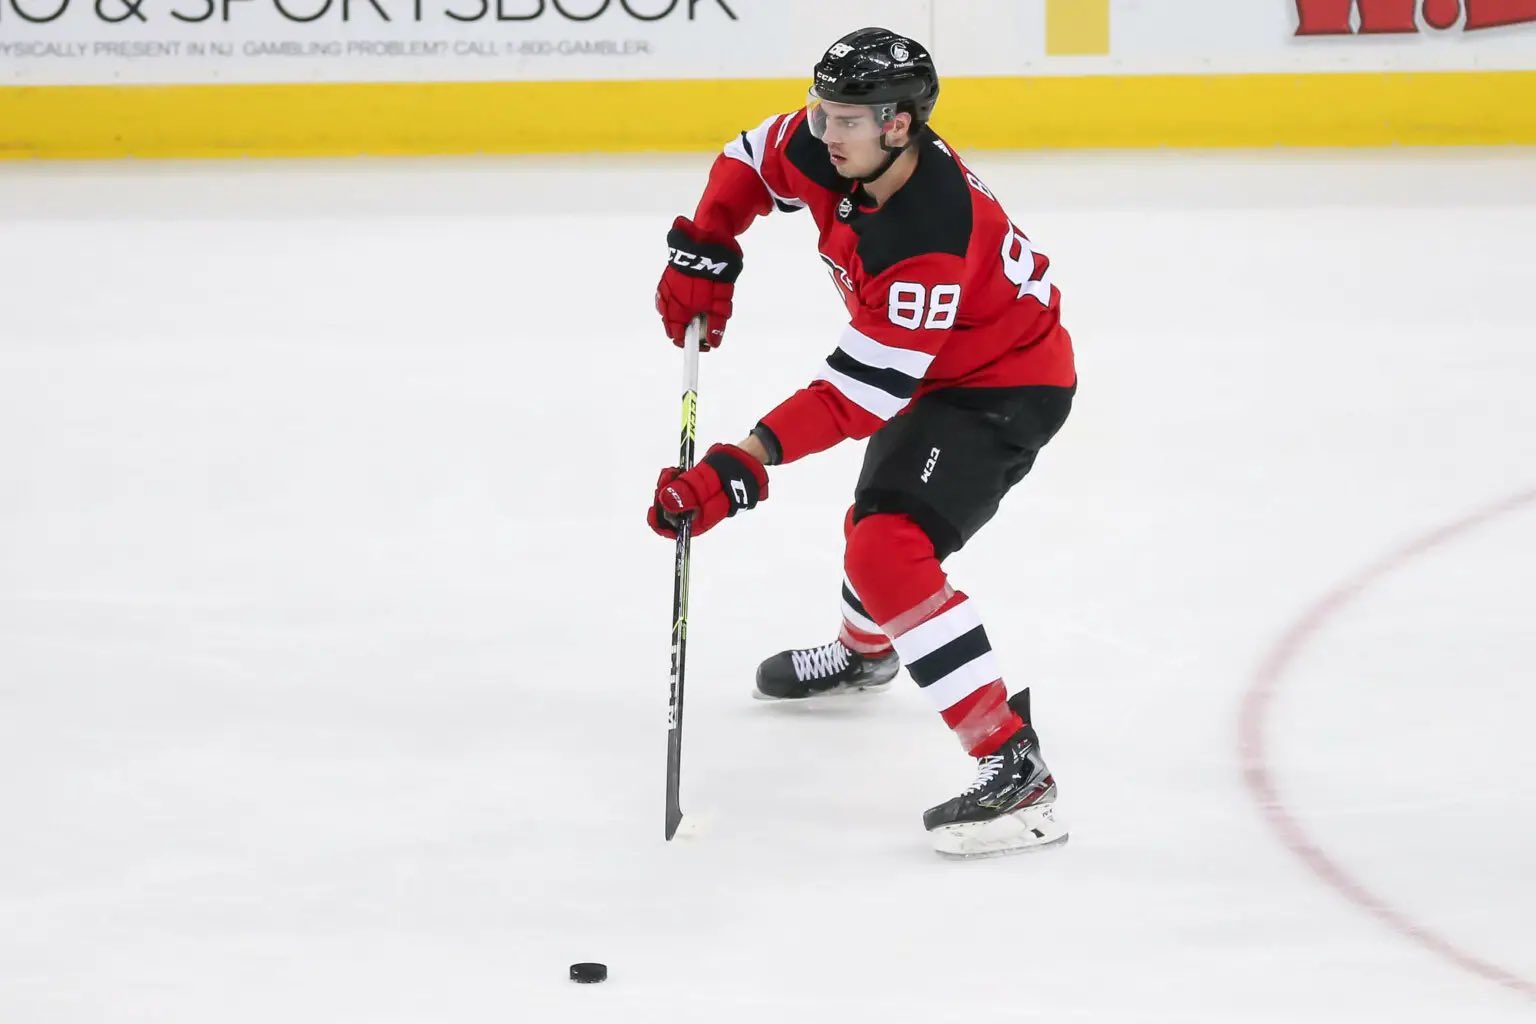 New Jersey Devils: Kevin Bahl to make NHL debut